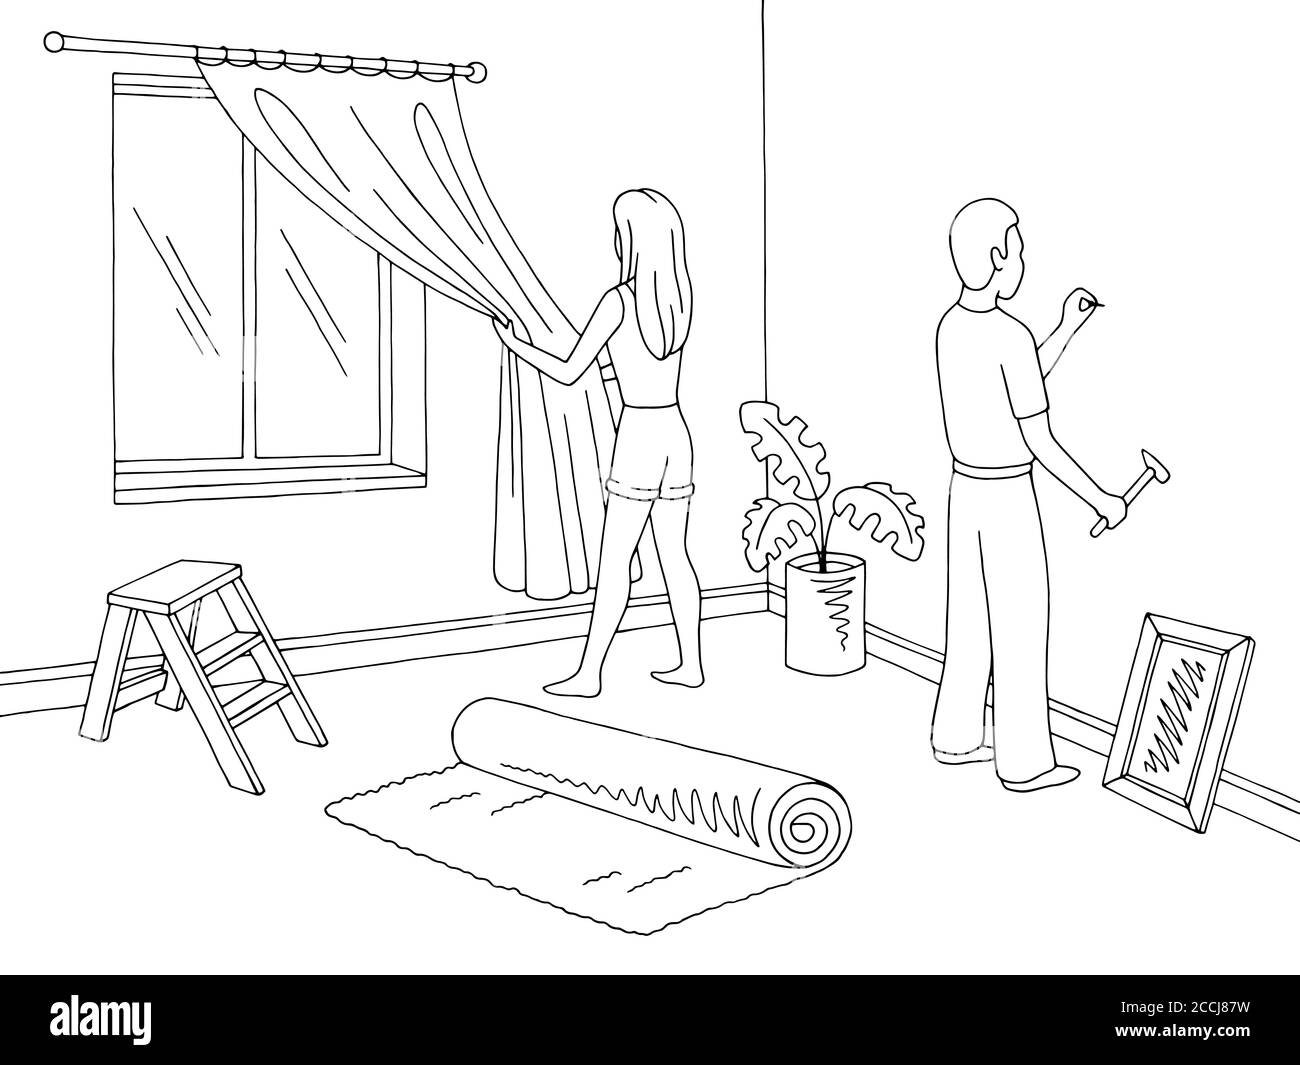 Renovierung Zimmer Haus Inneneinrichtung Grafik schwarz weiß Skizze Illustration Vektor. Der Mensch hämmert einen Nagel. Hängender Vorhang für Frauen Stock Vektor